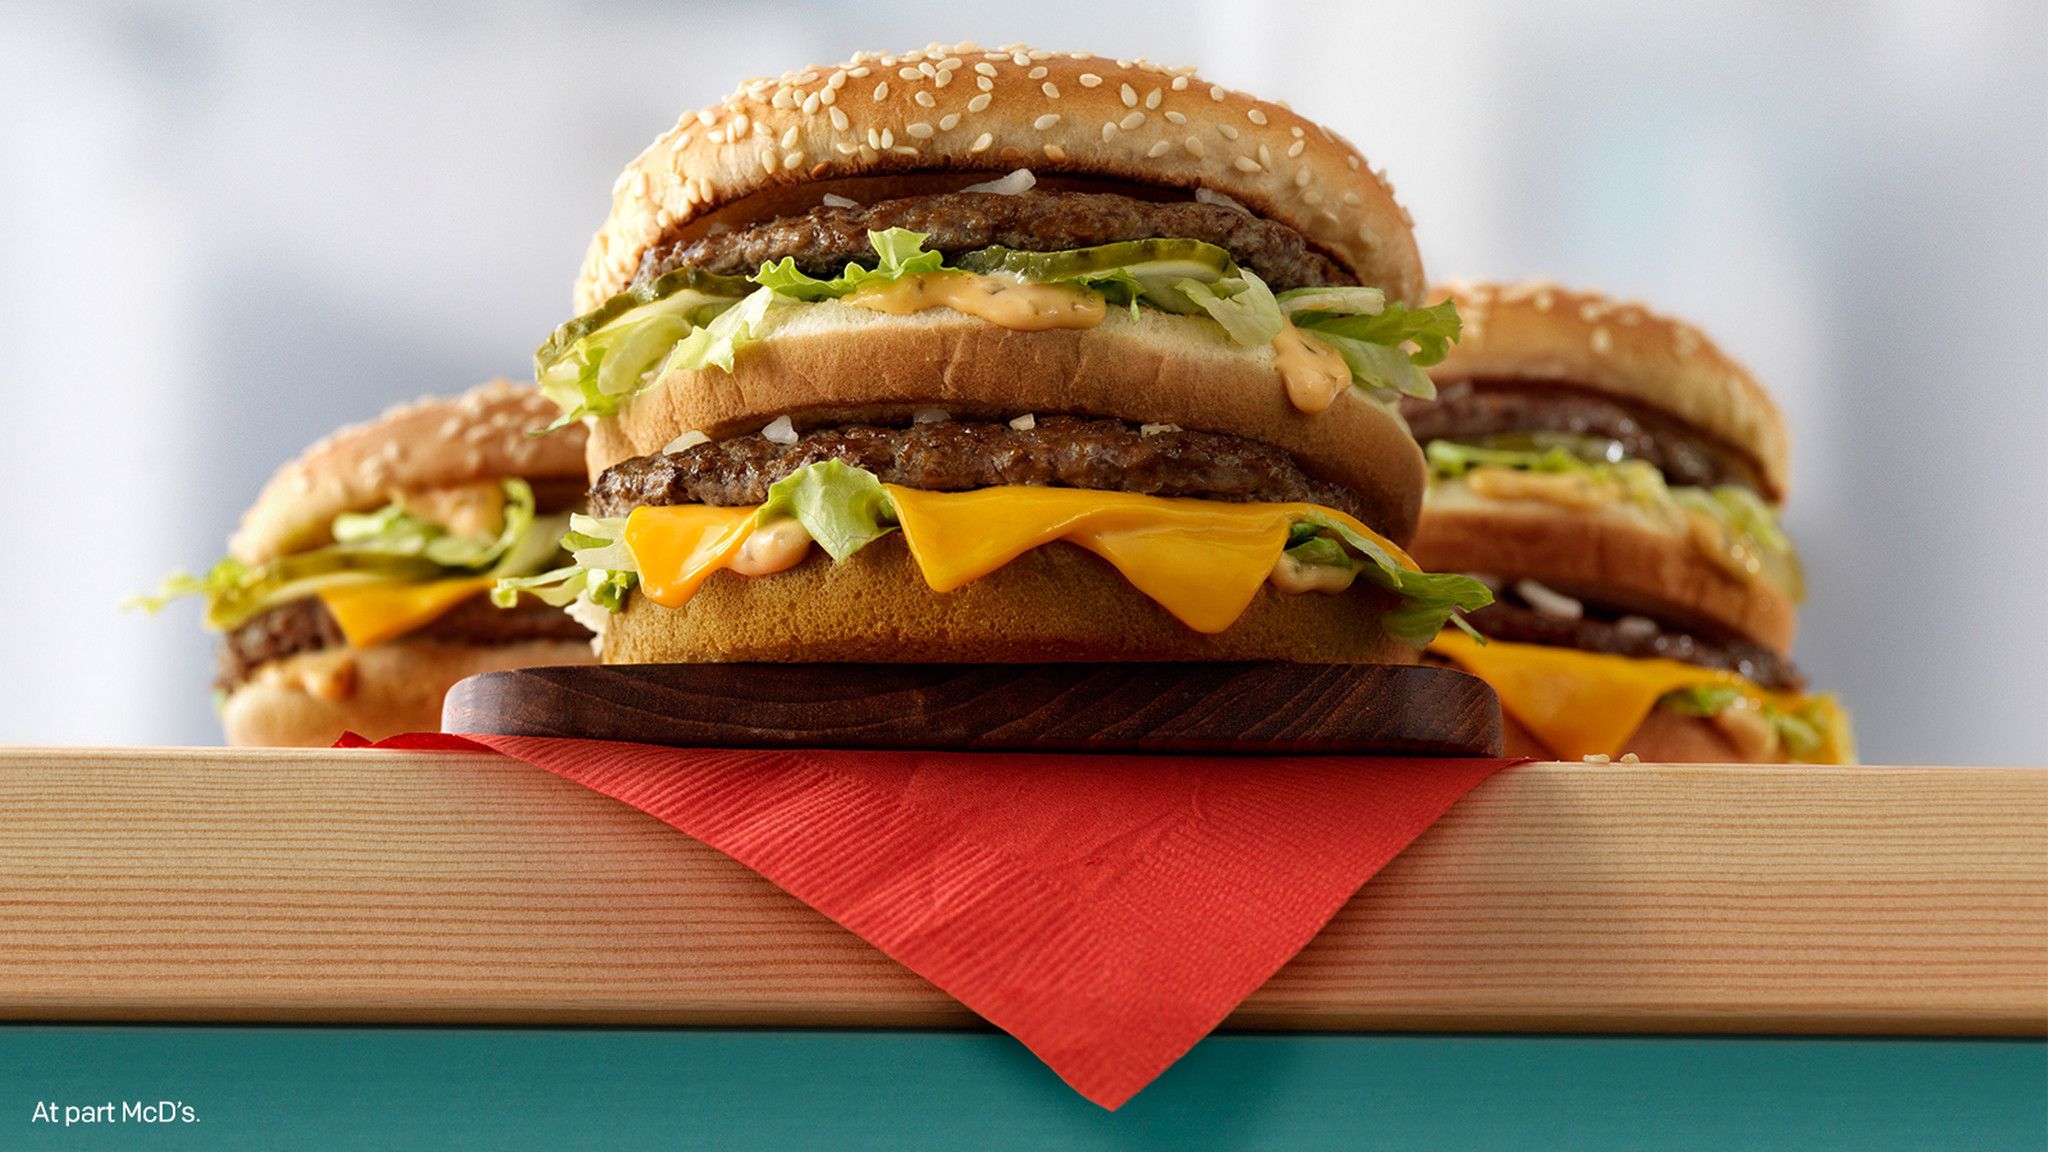 McDonald's using Florida as test run for new Big Mac burgers